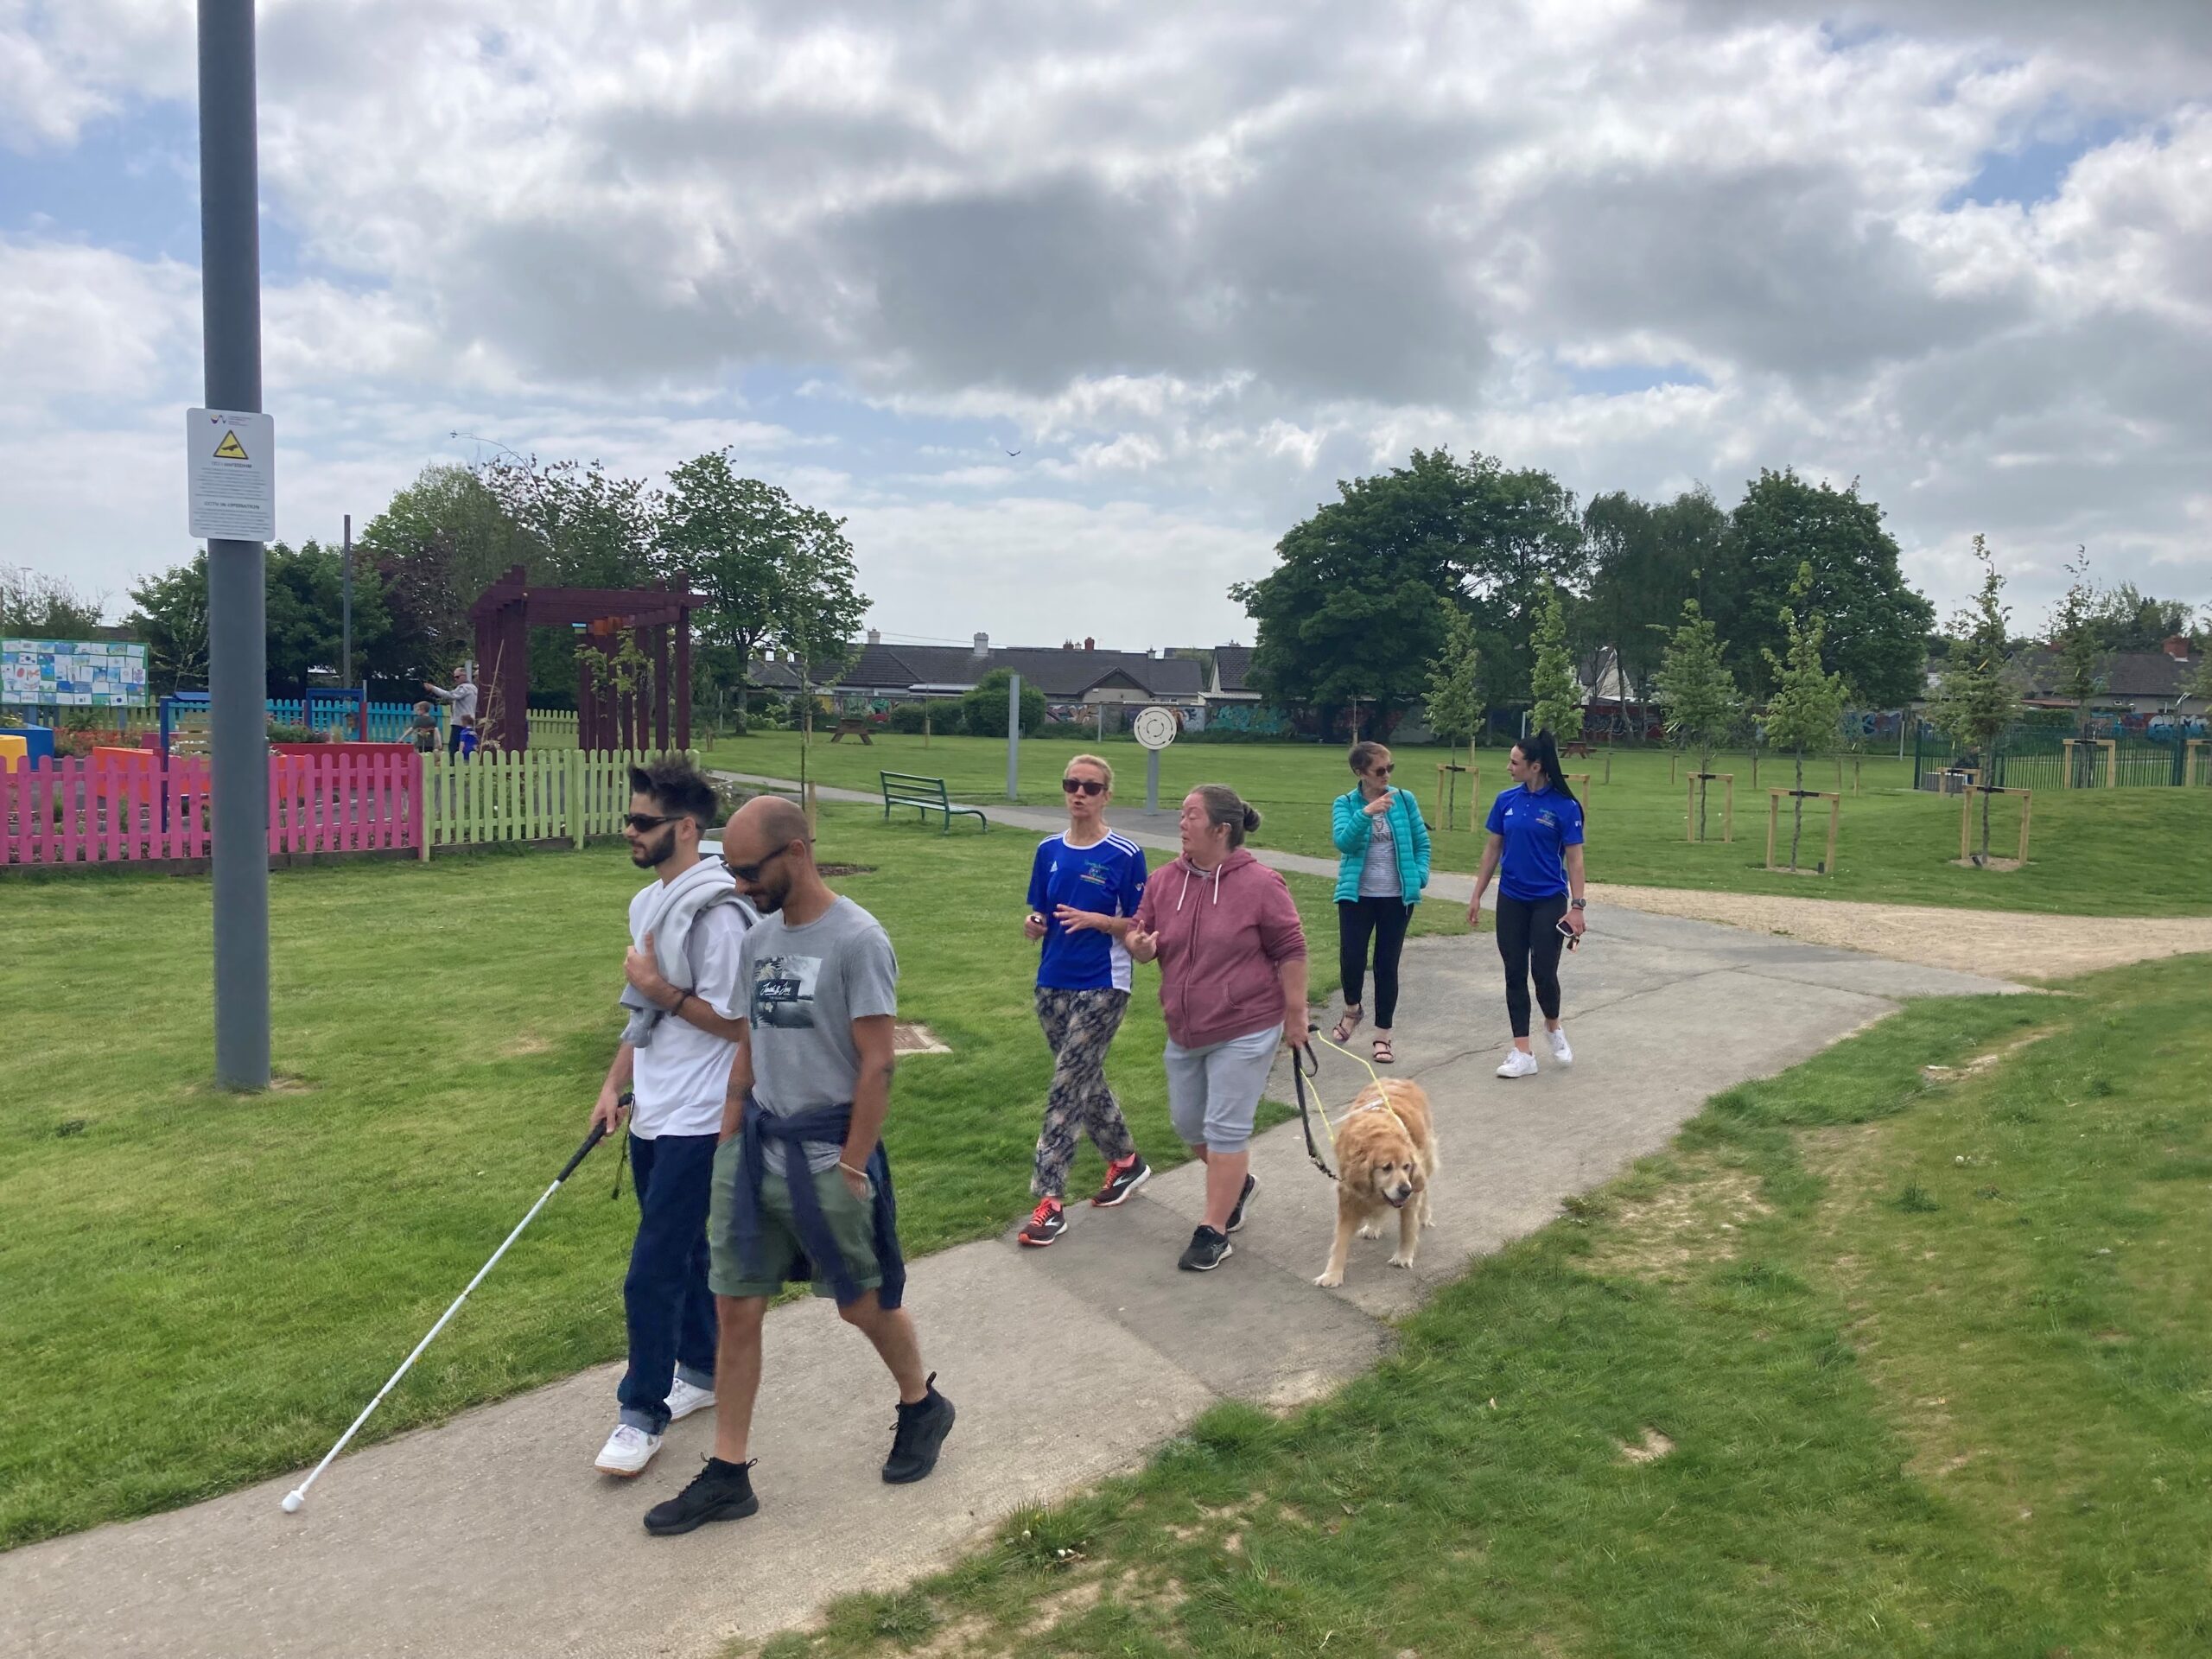 Participants walking on a park path.